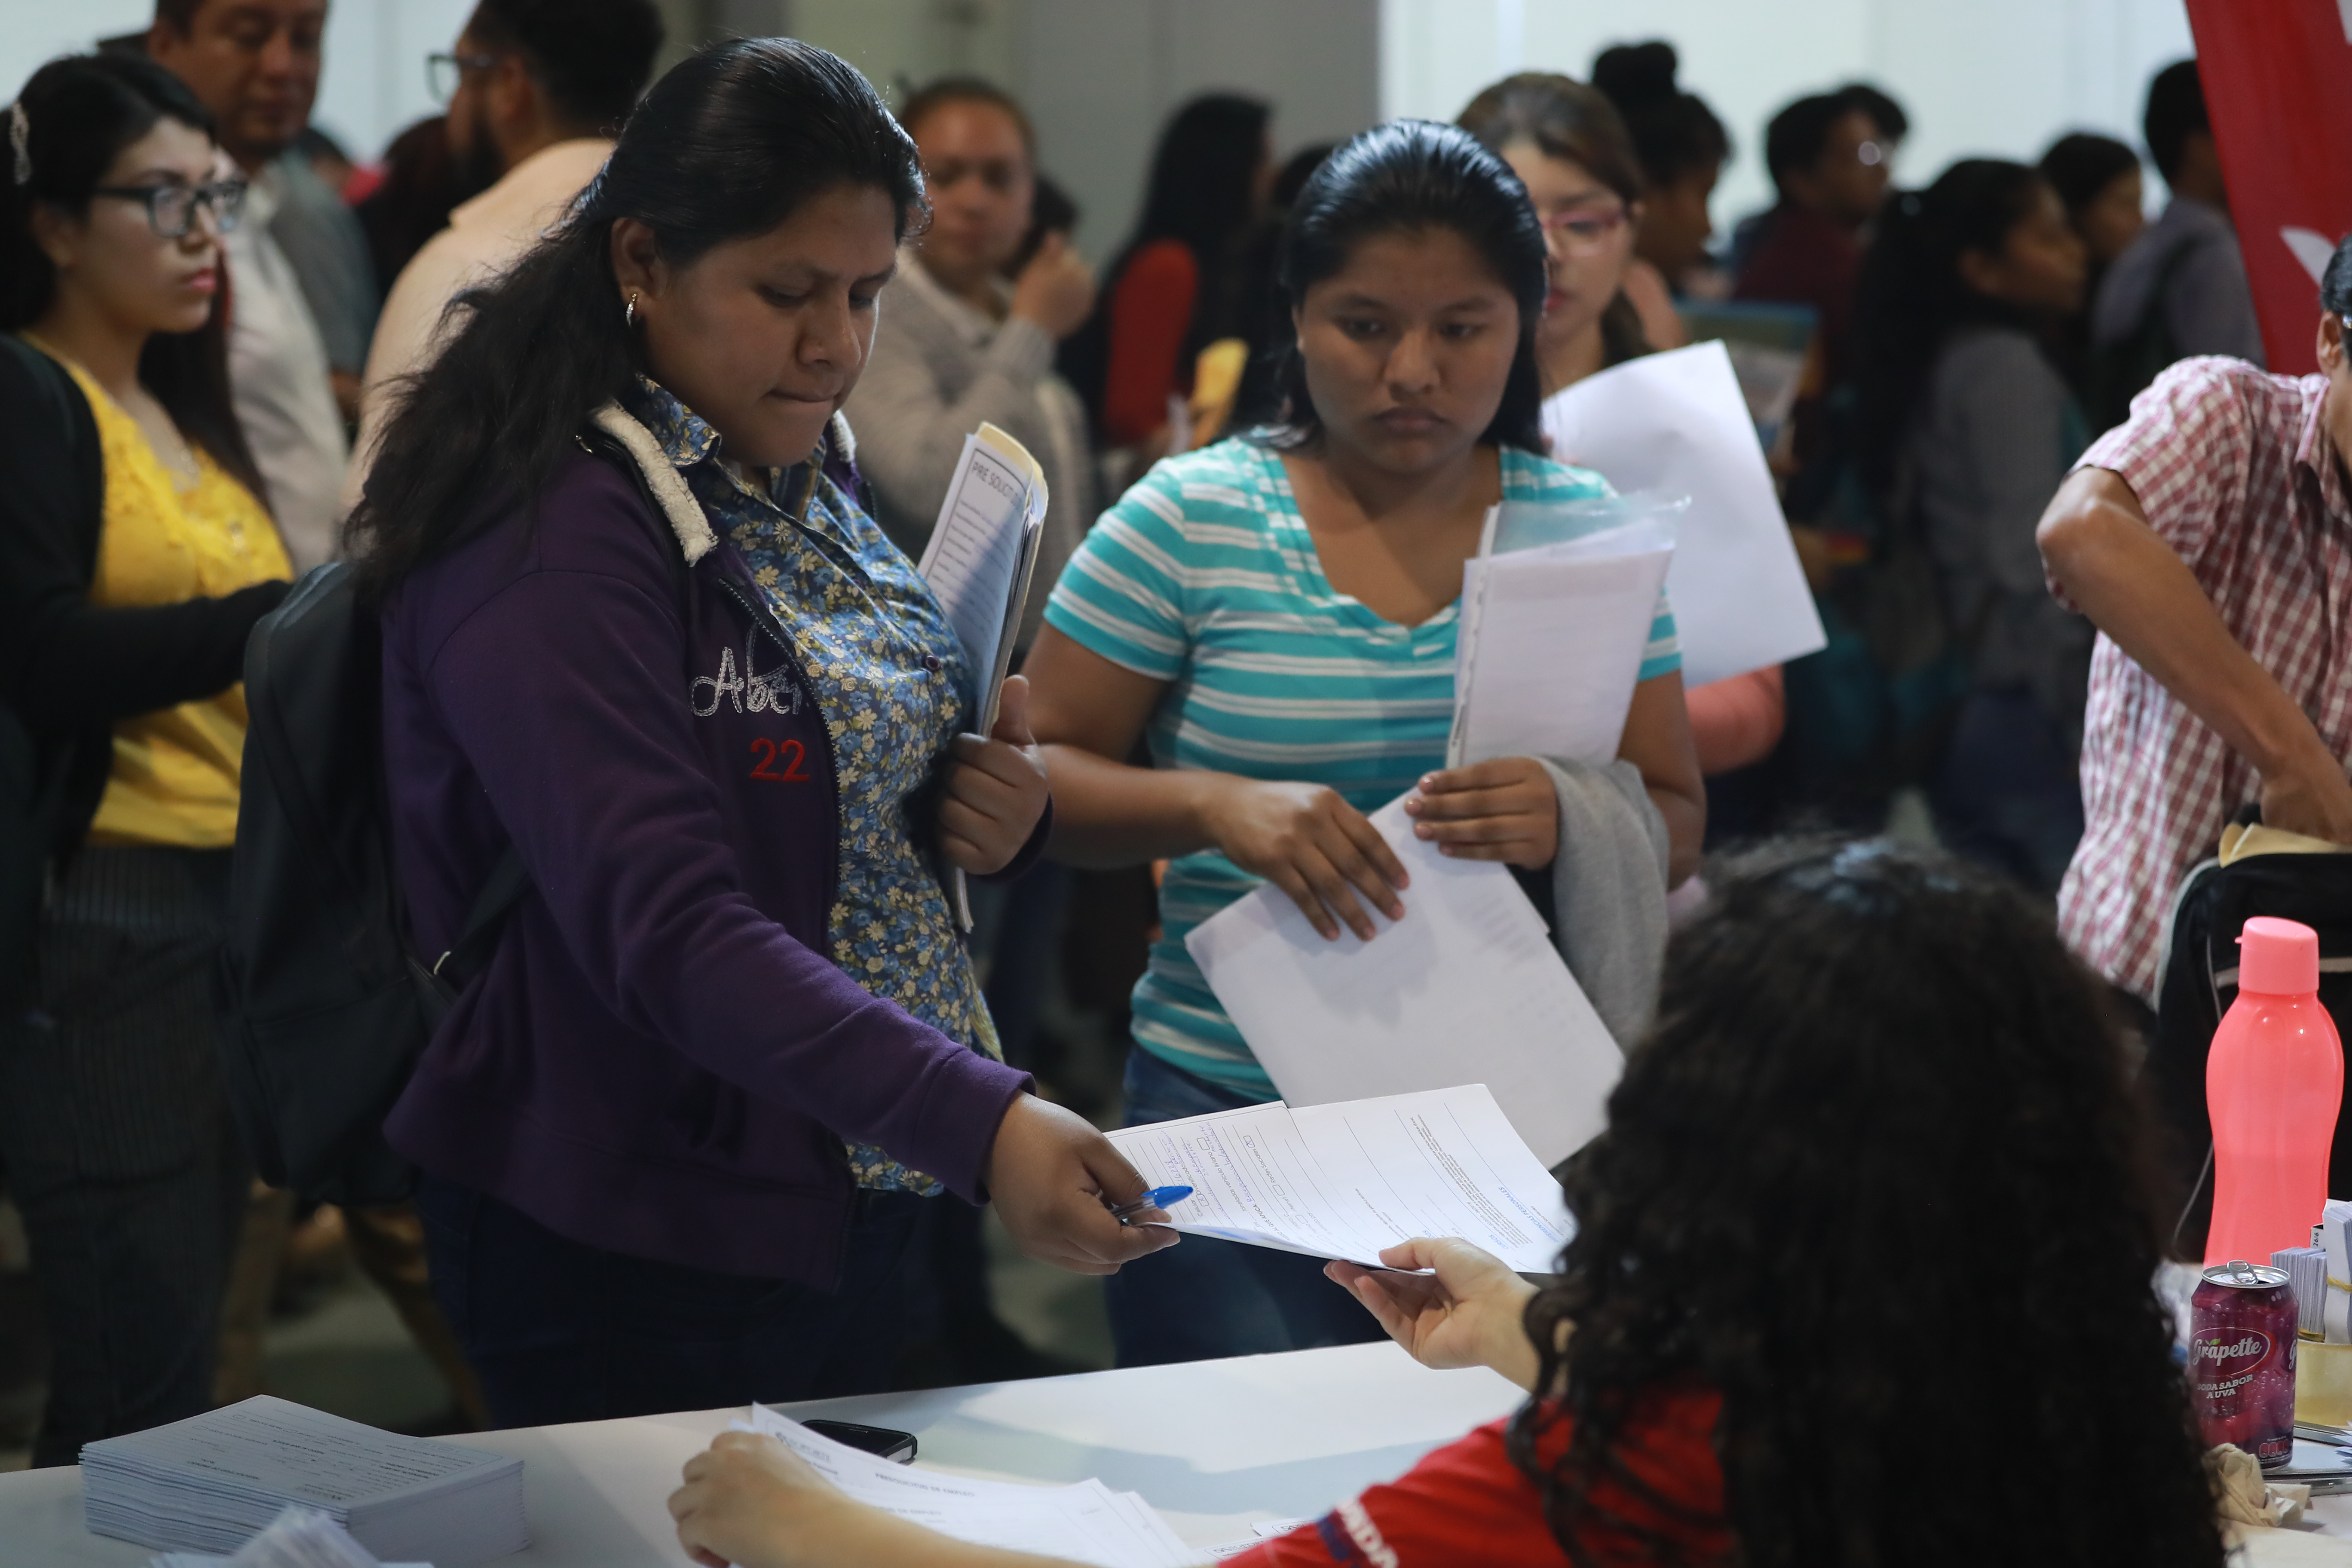 La población en edad de trabajar en Guatemala es de 11.7 millones y la población económicamente activa, 7.1 millones, mientras que el desempleo abierto del 2%, según la Enei del 2018. (Foto Prensa Libre: Hemeroteca) 